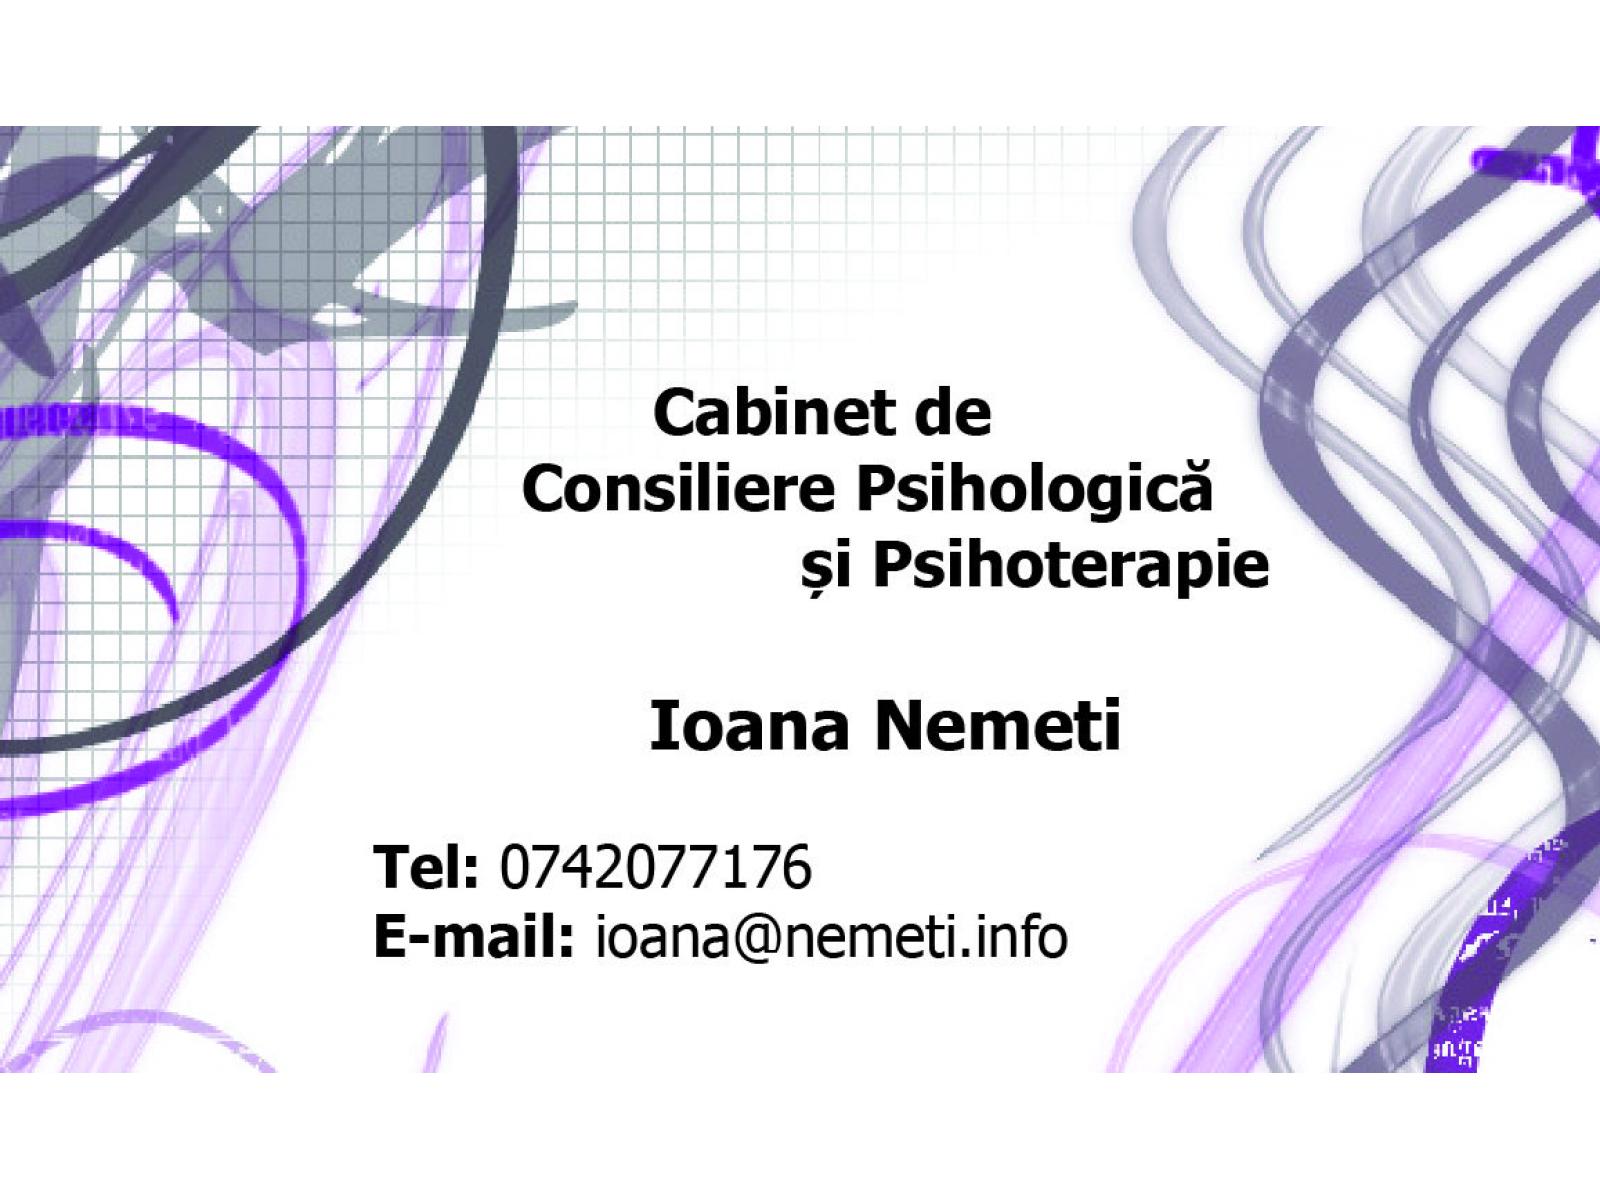 Cabinet de consiliere psihologica si psihoterapie - carte_de_vizita_fata.jpg